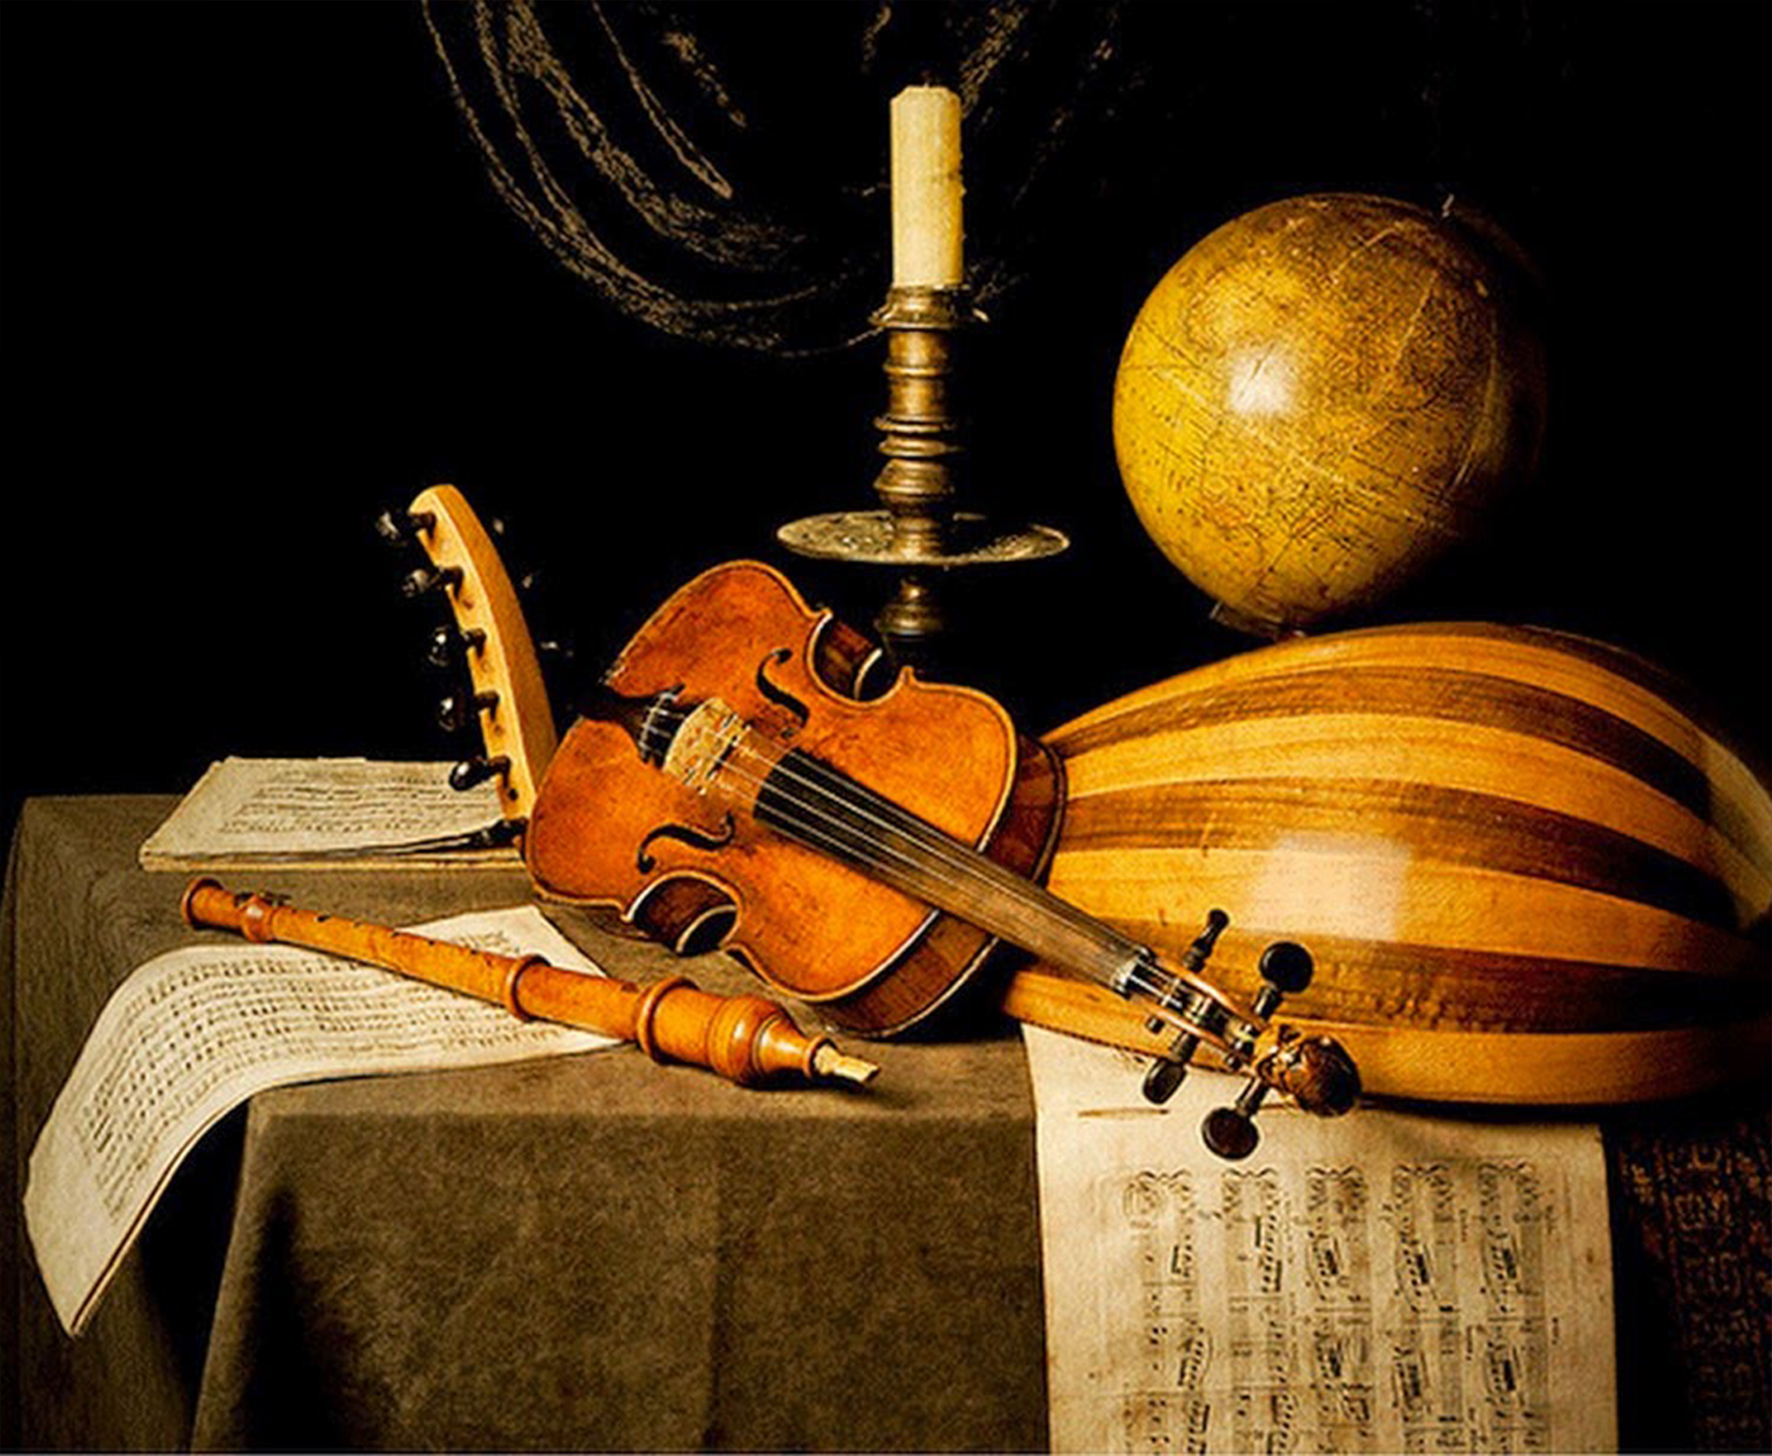 Música, conferencias, exposiciones periféricas y más en torno al barroco